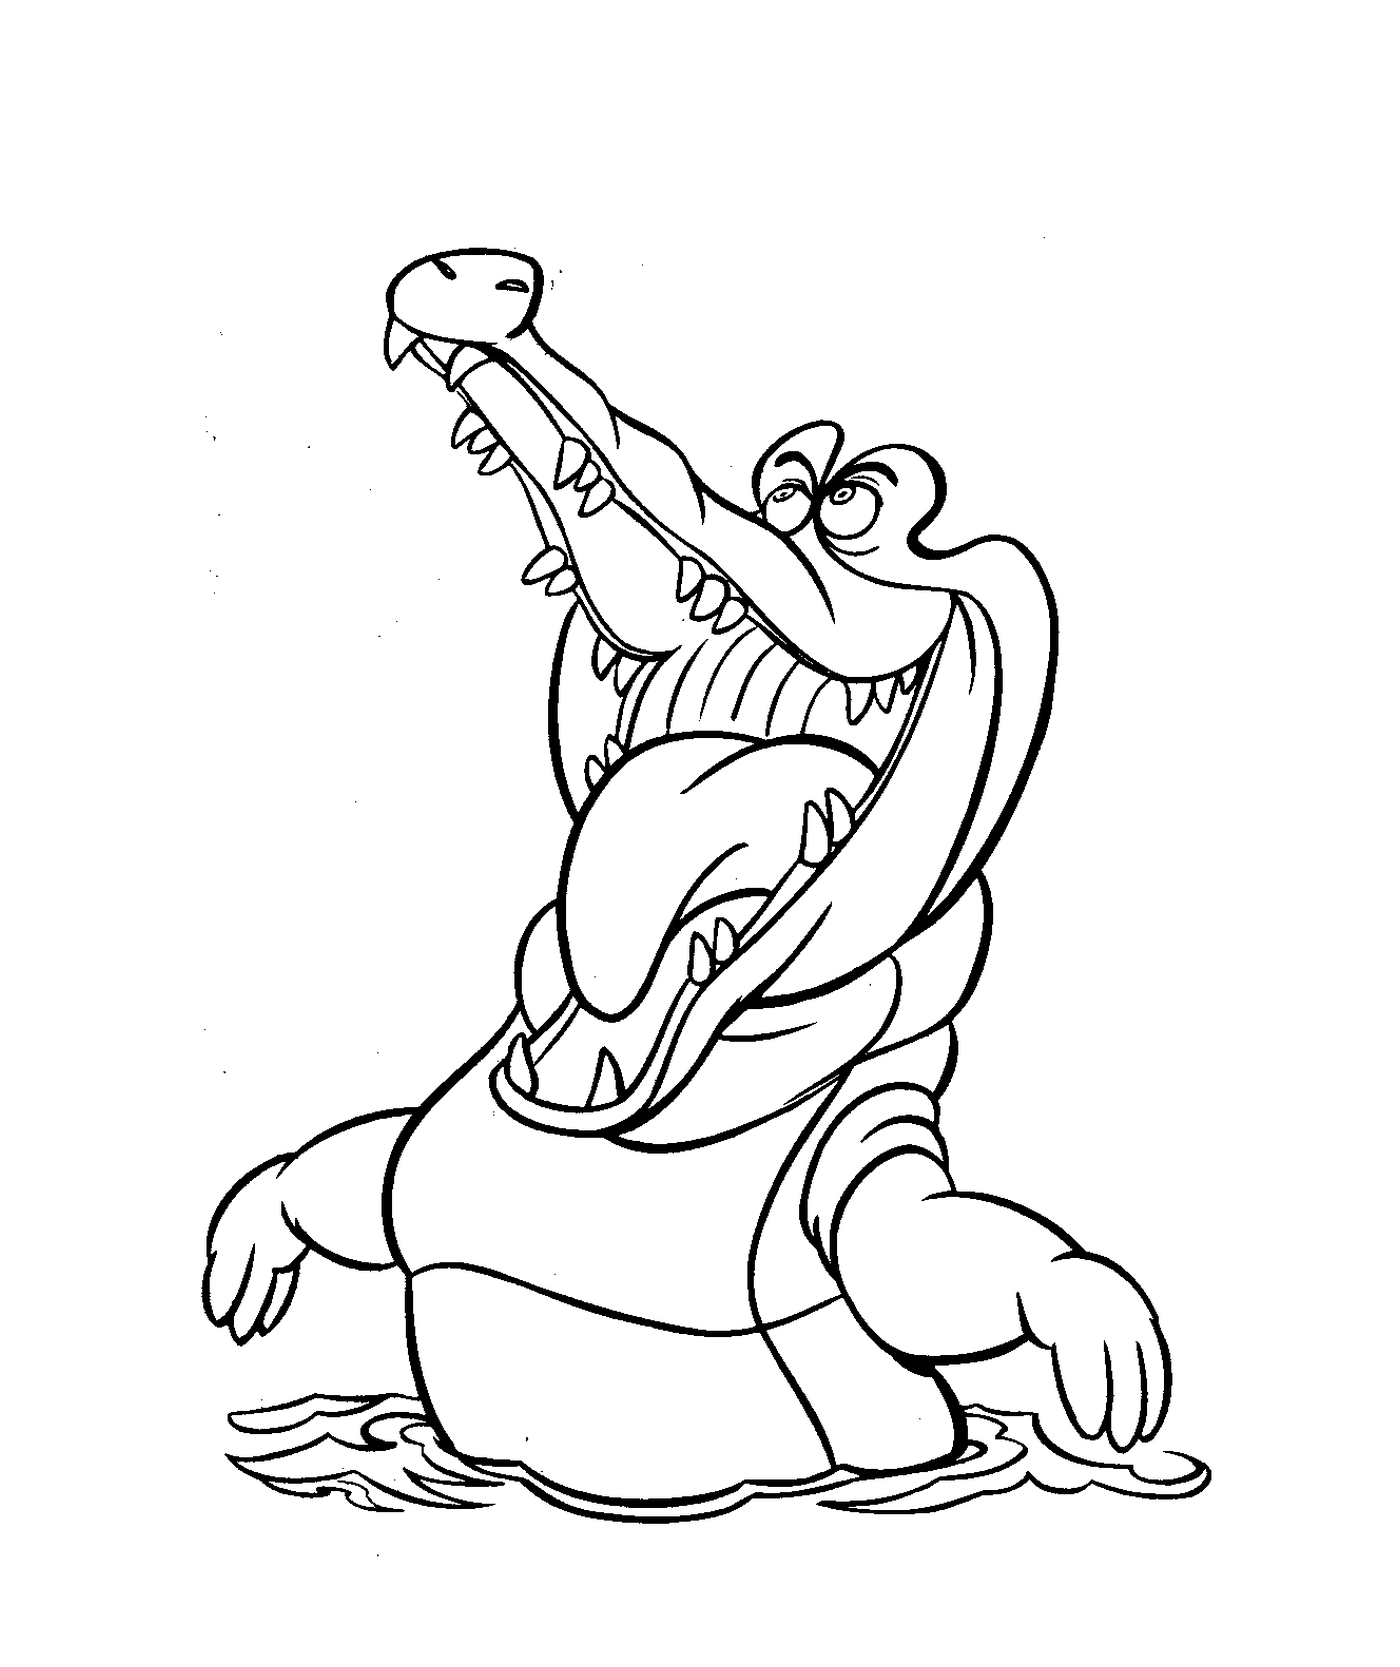  Um crocodilo de Peter Pan, os personagens da Disney para crianças 